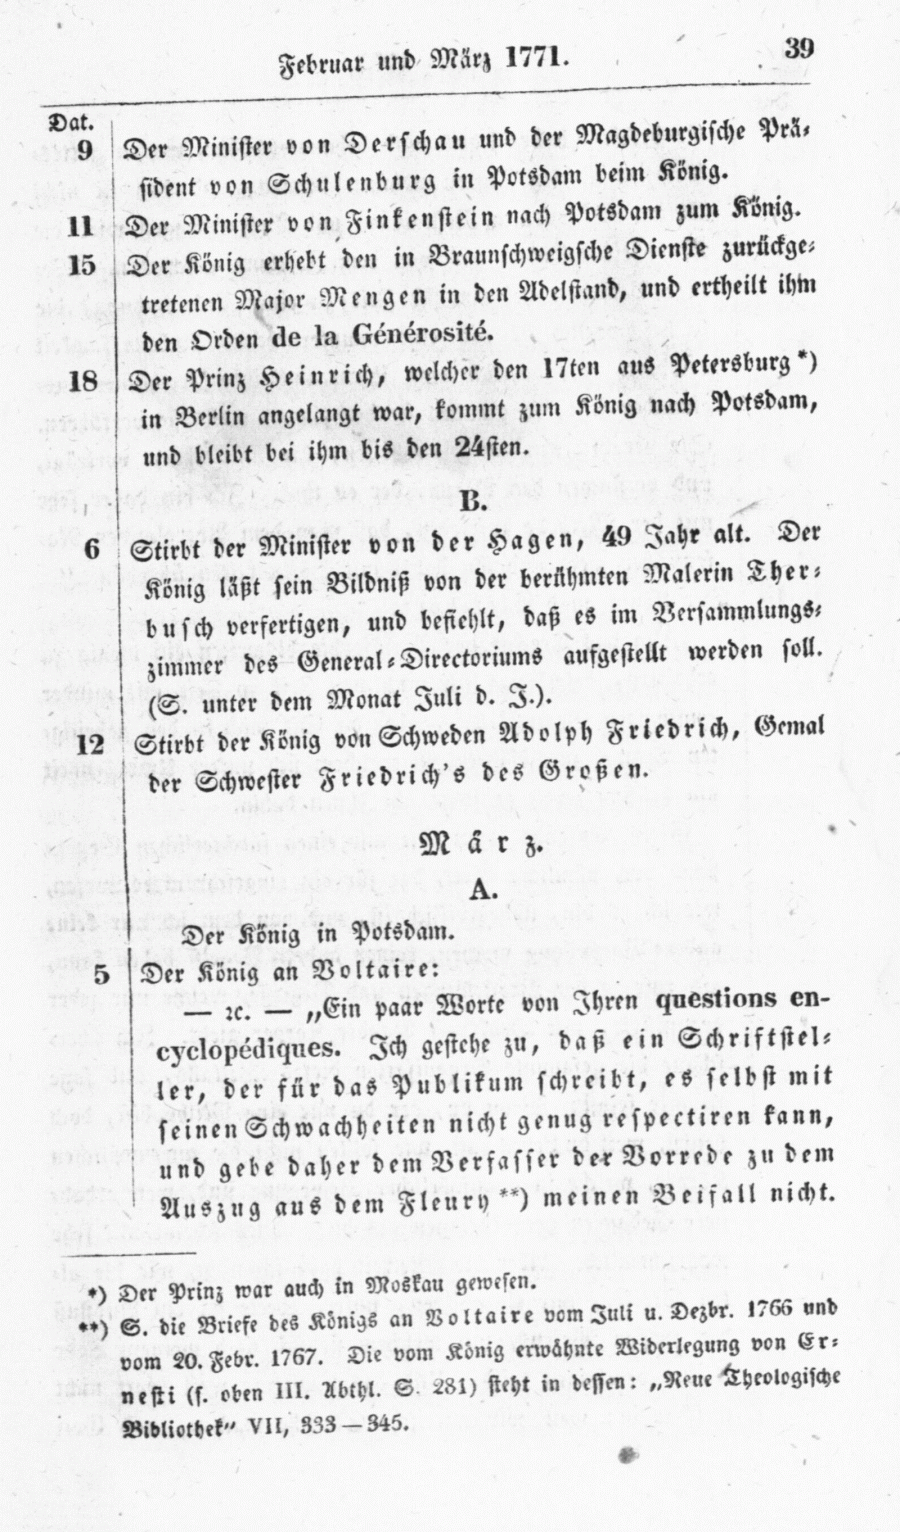 S. 39, Obj. 2